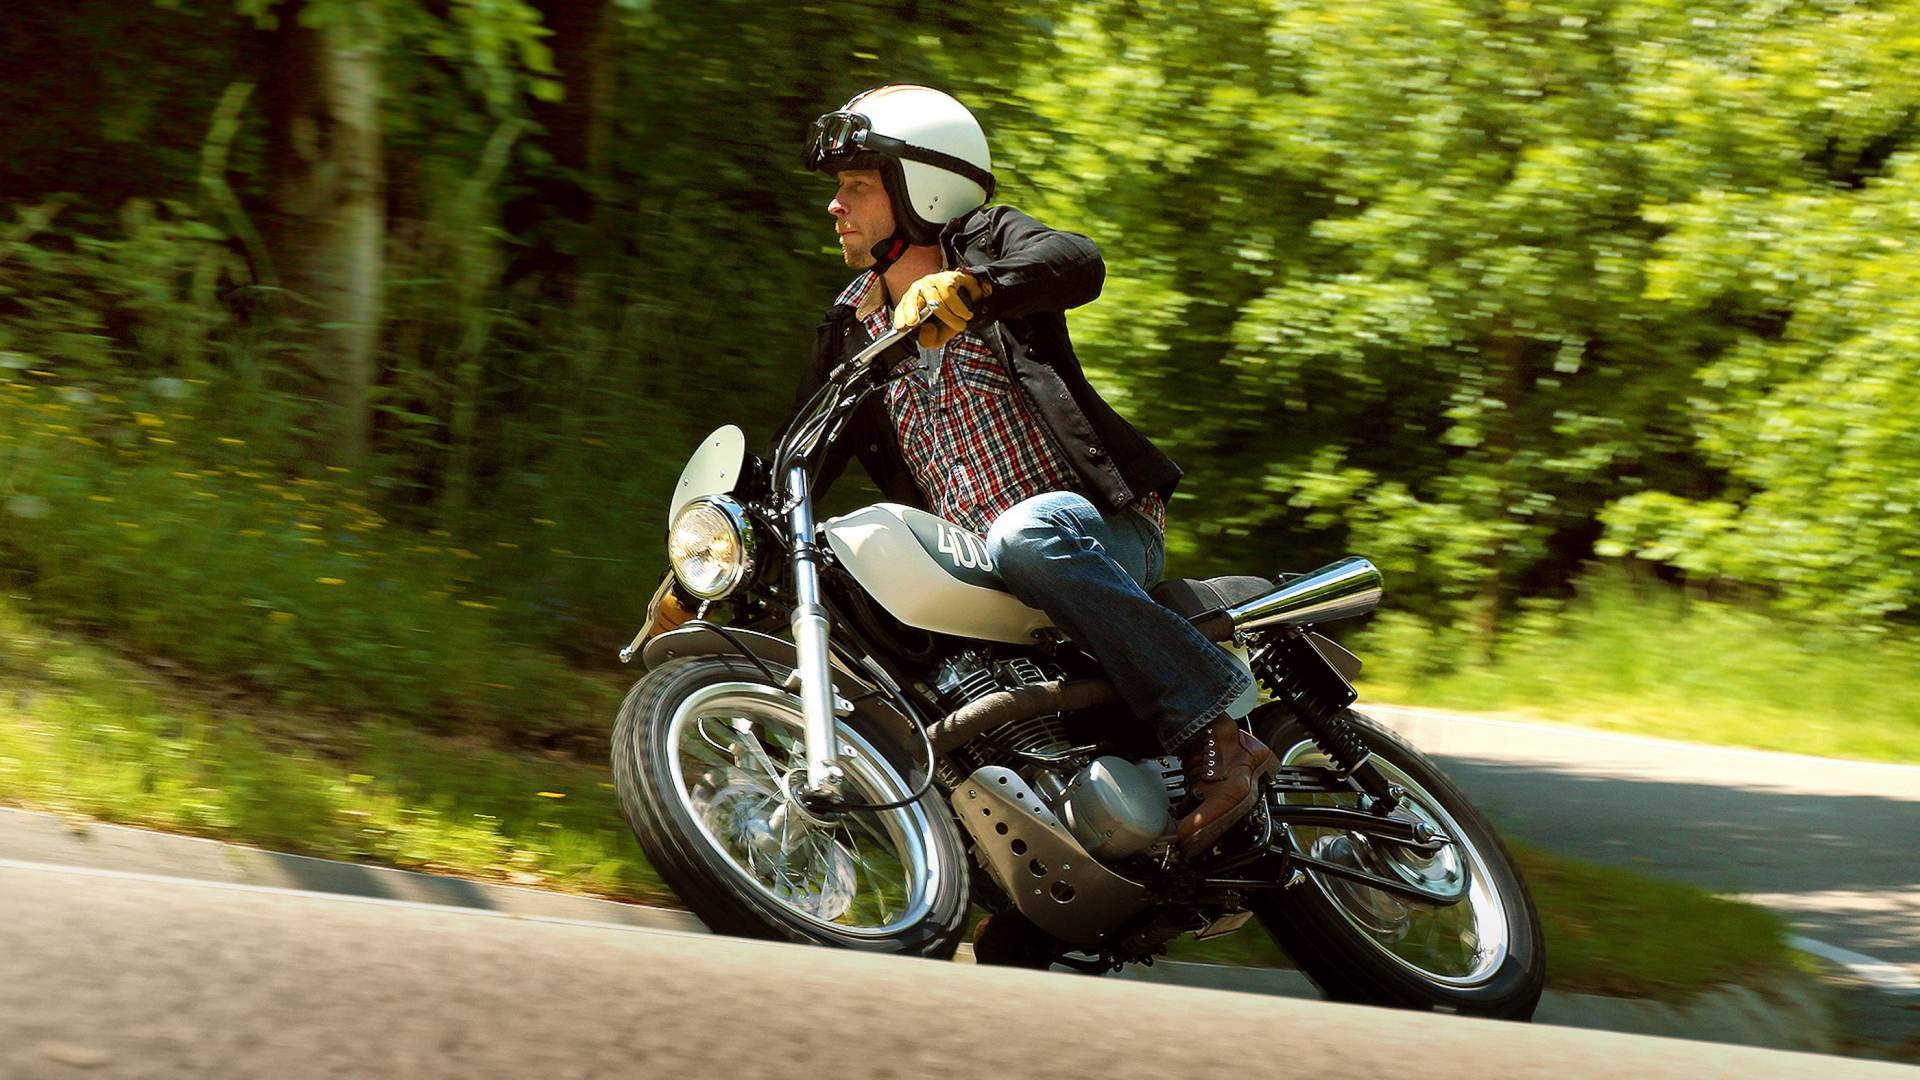 ✅ топ лучших 400 кубовых мотоциклов, отзывы и обзор моделей - craitbikes.ru